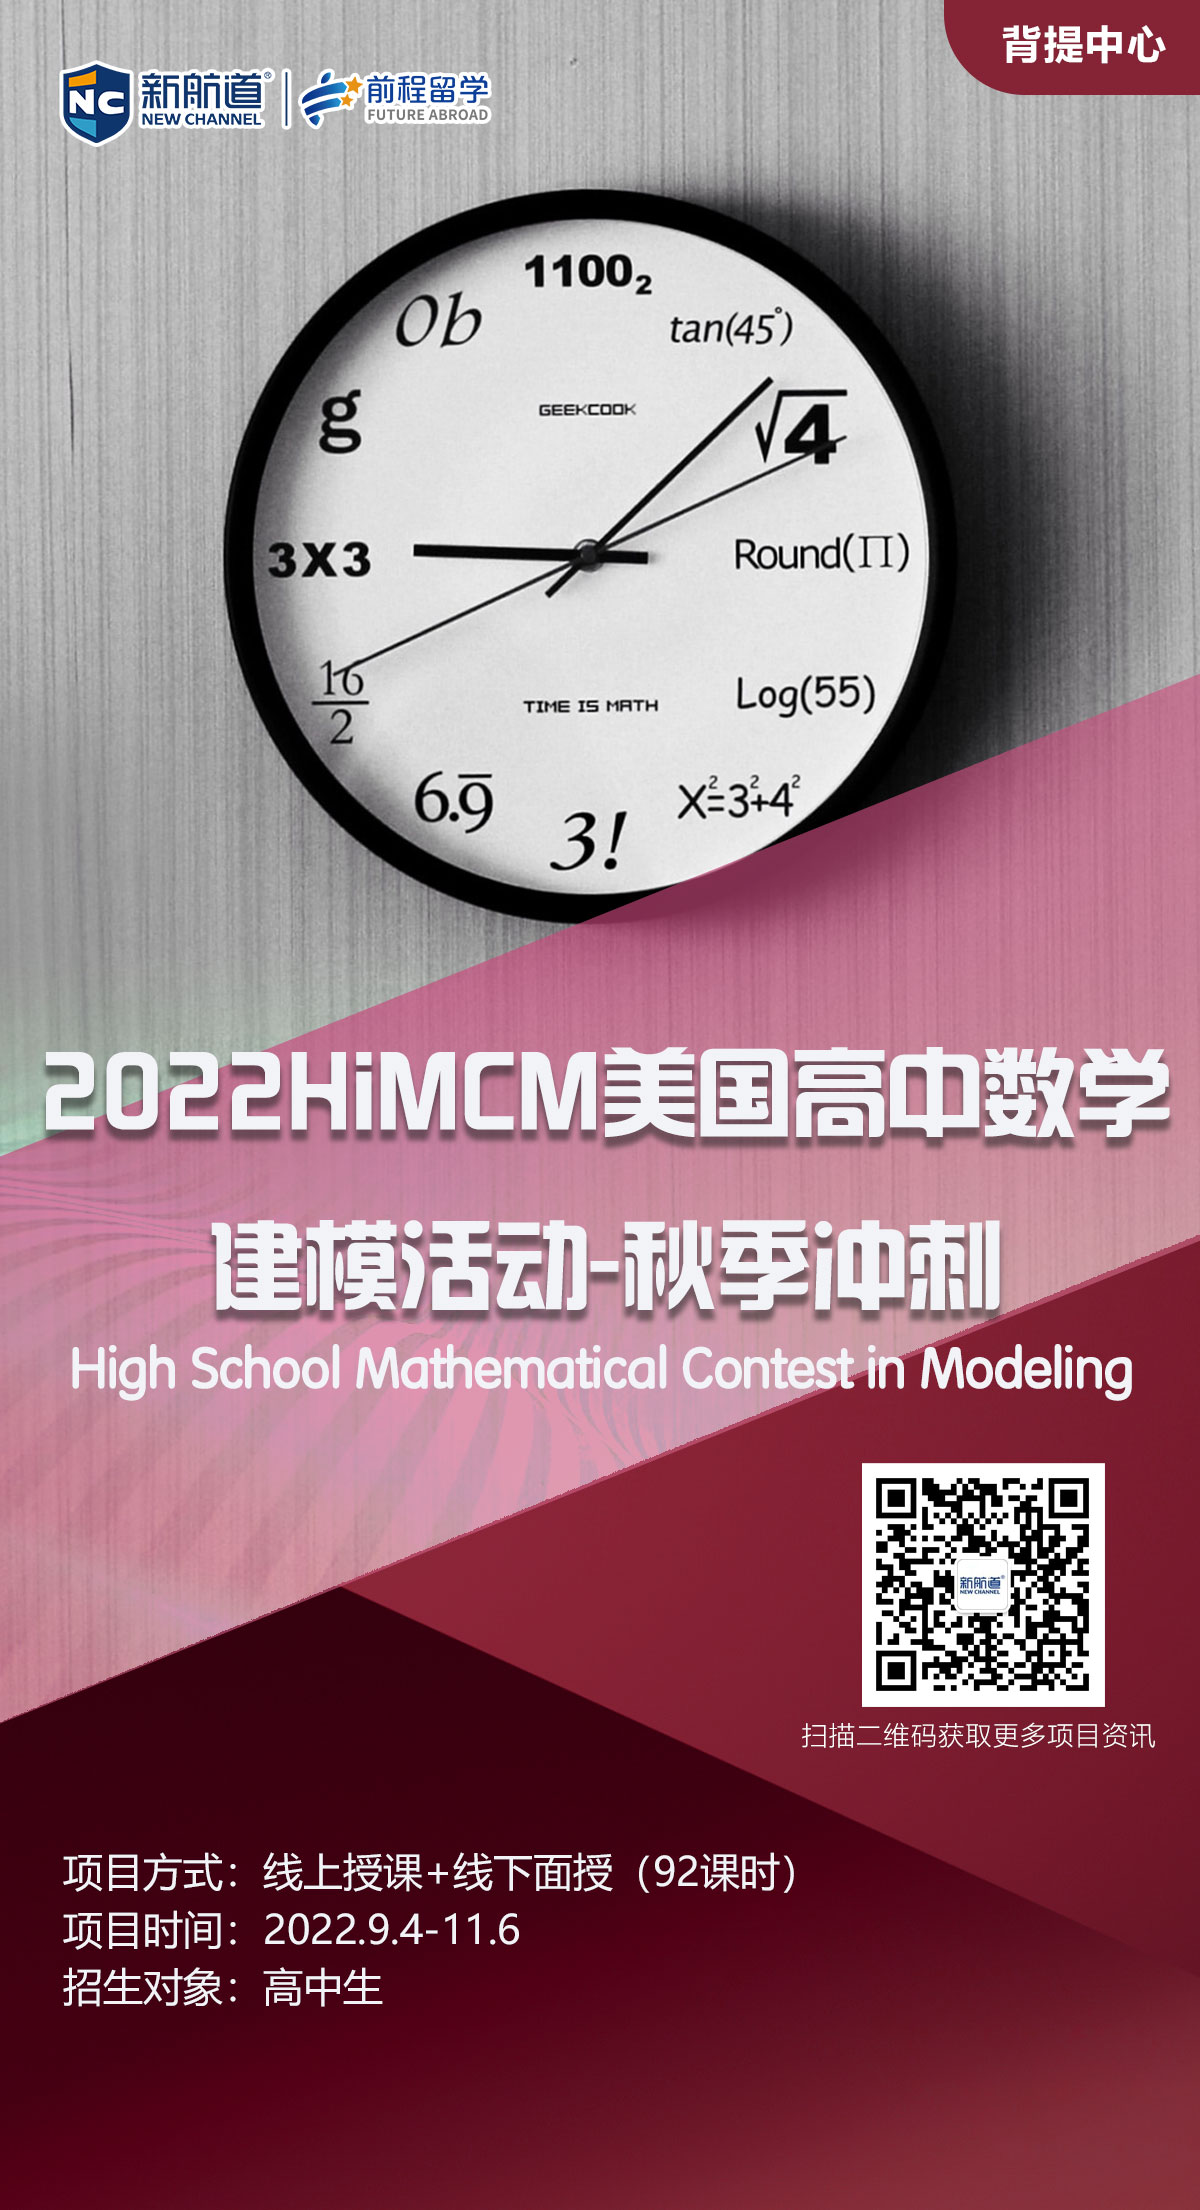 【背景提升】2022HiMCM美国高中数学建模活动-秋季冲刺